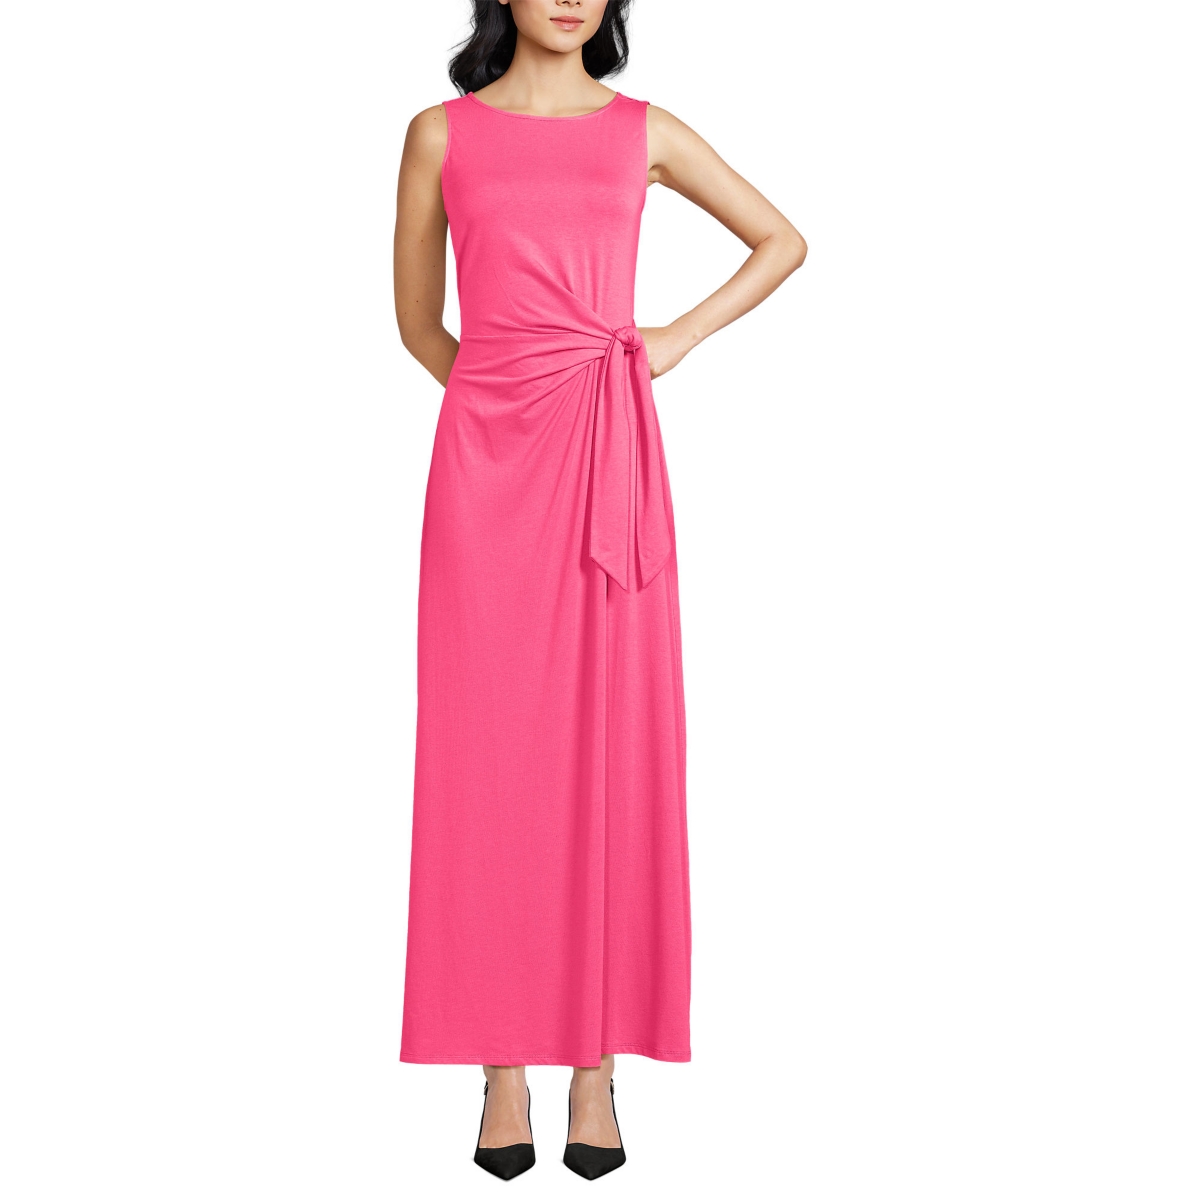 Women's Sleeveless Tie Waist Maxi Dress - Rouge pink